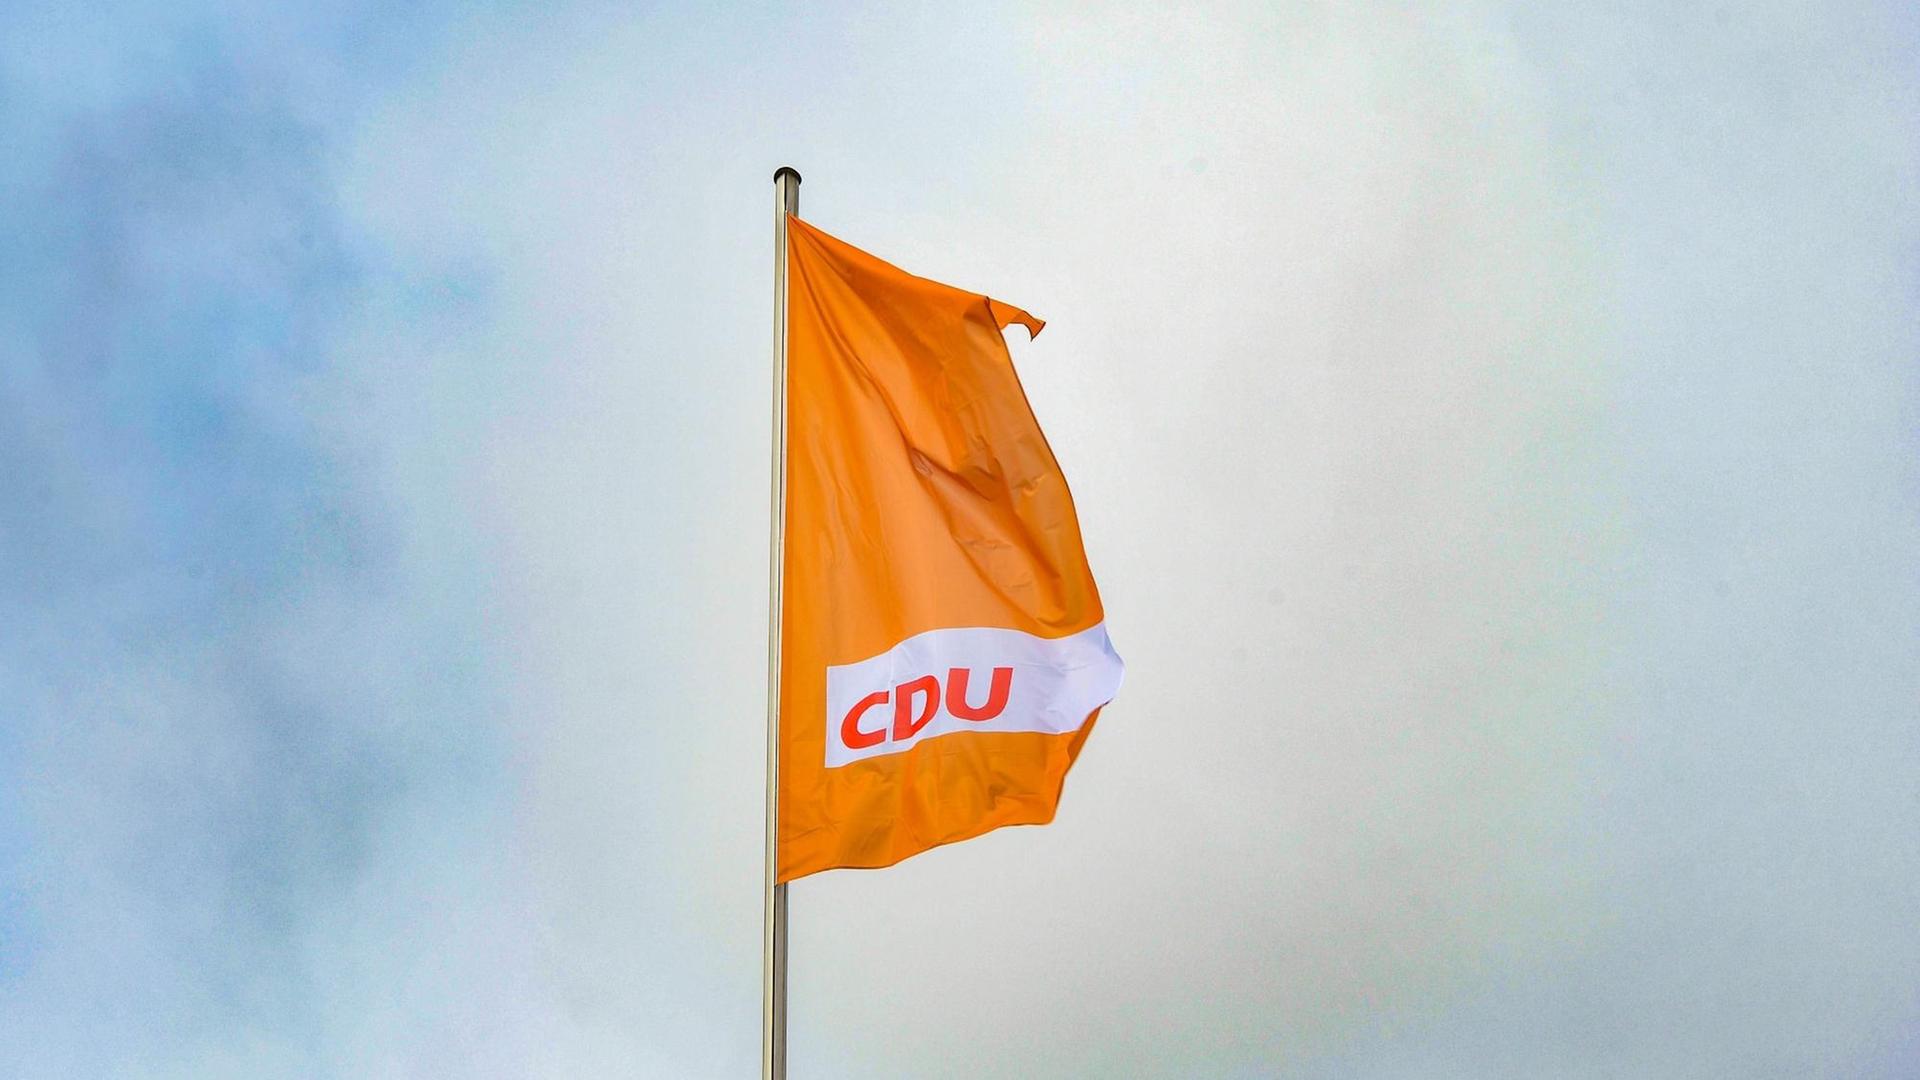 Eine orangefarbende Fahne mit dem CDU-Logo weht vor blauem Himmel.